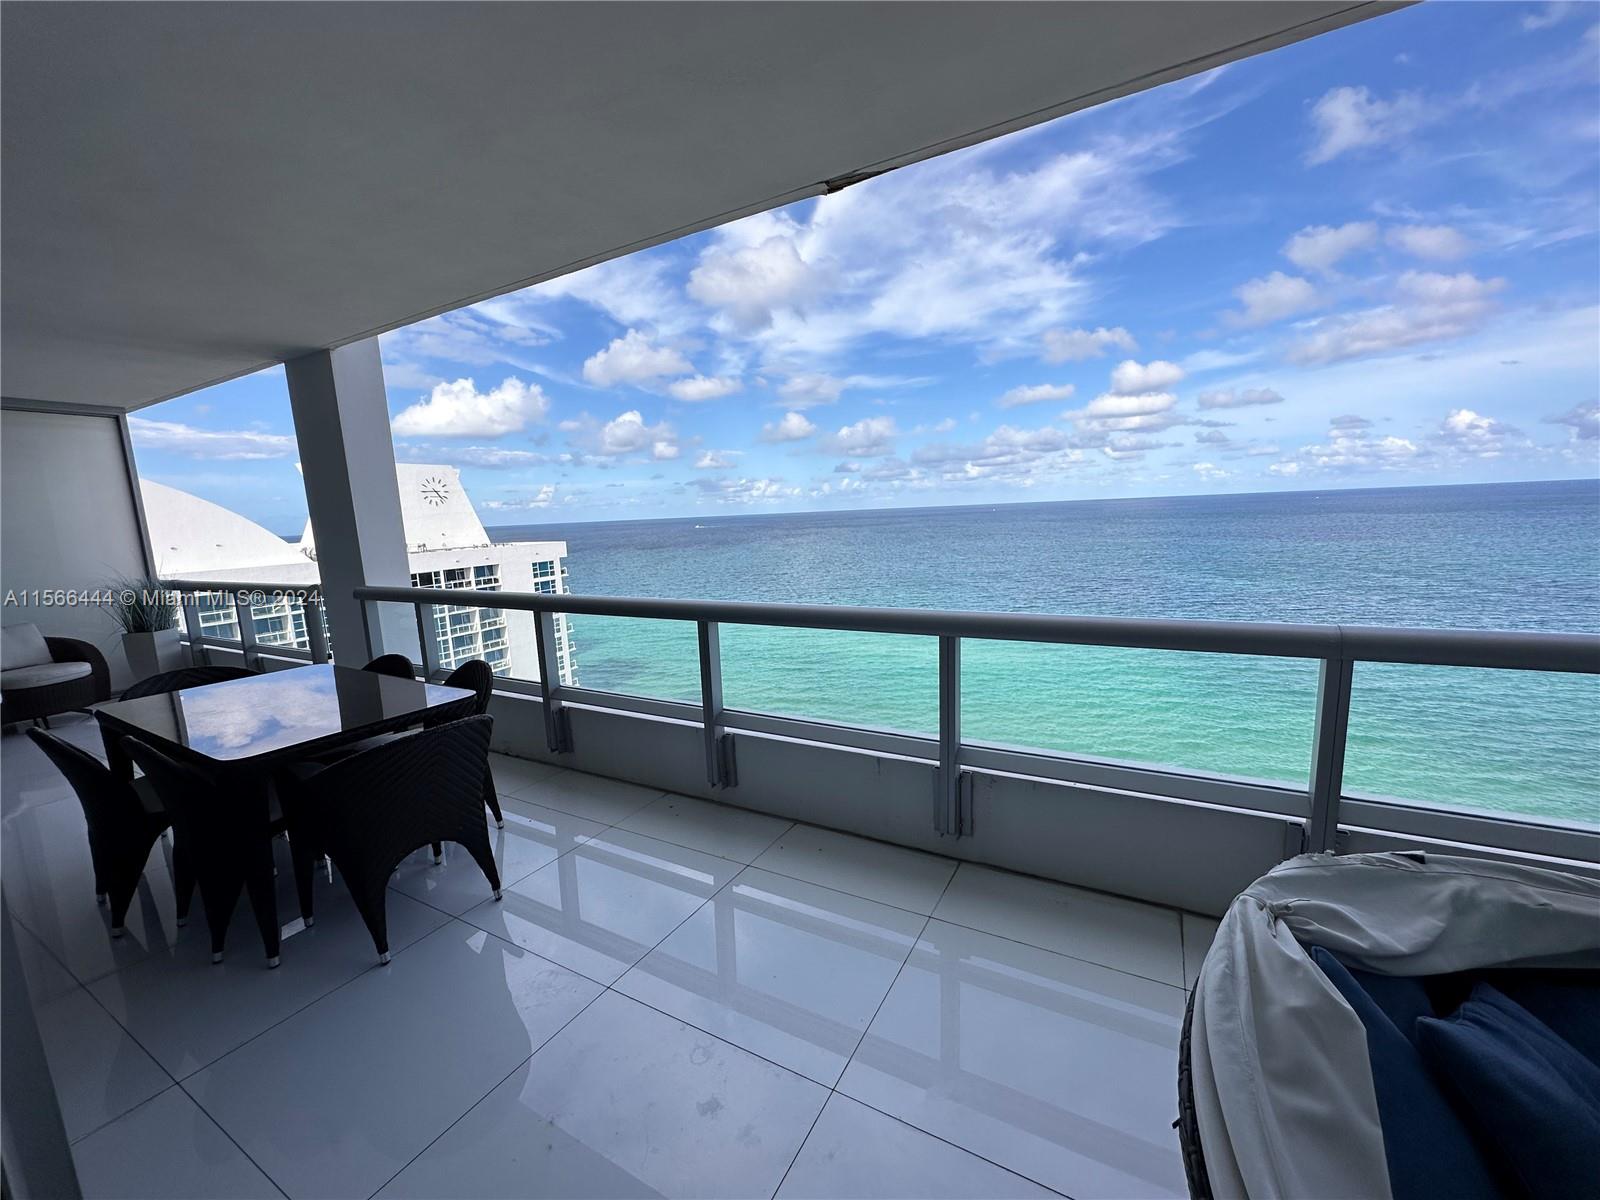 Apartamento en Alquiler en Miami Beach, FL